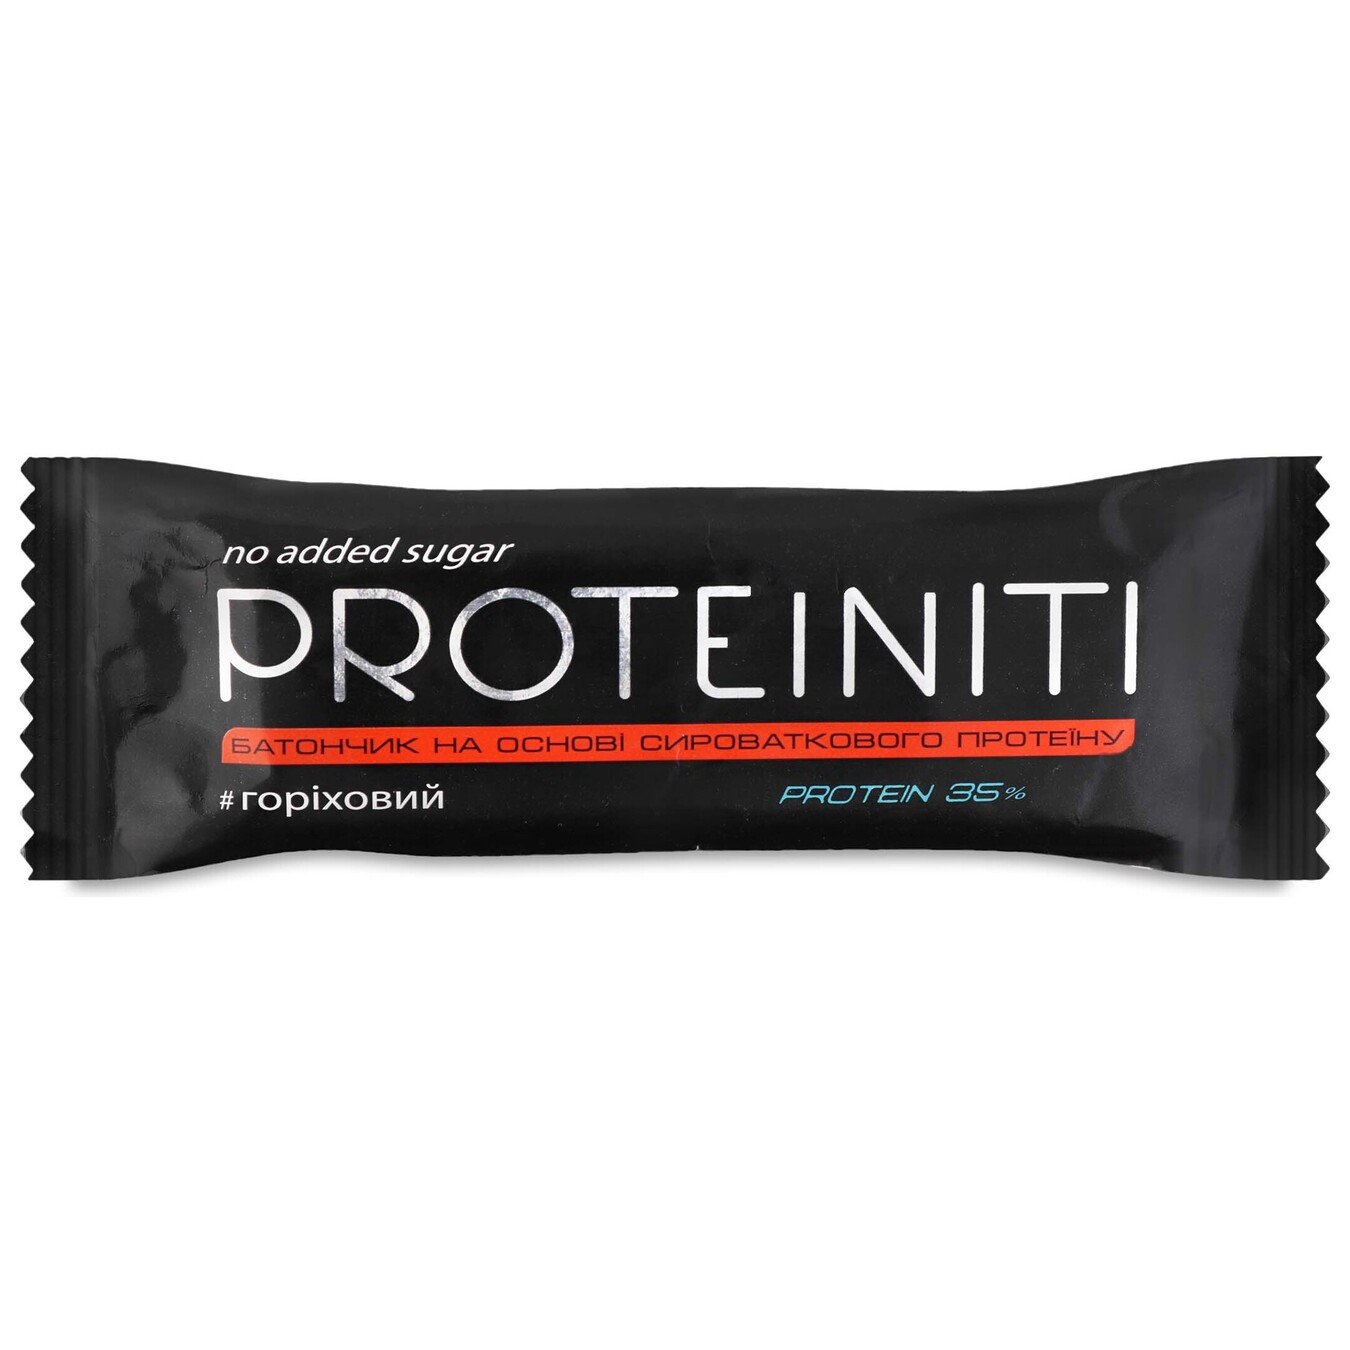 Батончик Proteiniti протеиновый ореховый 40г